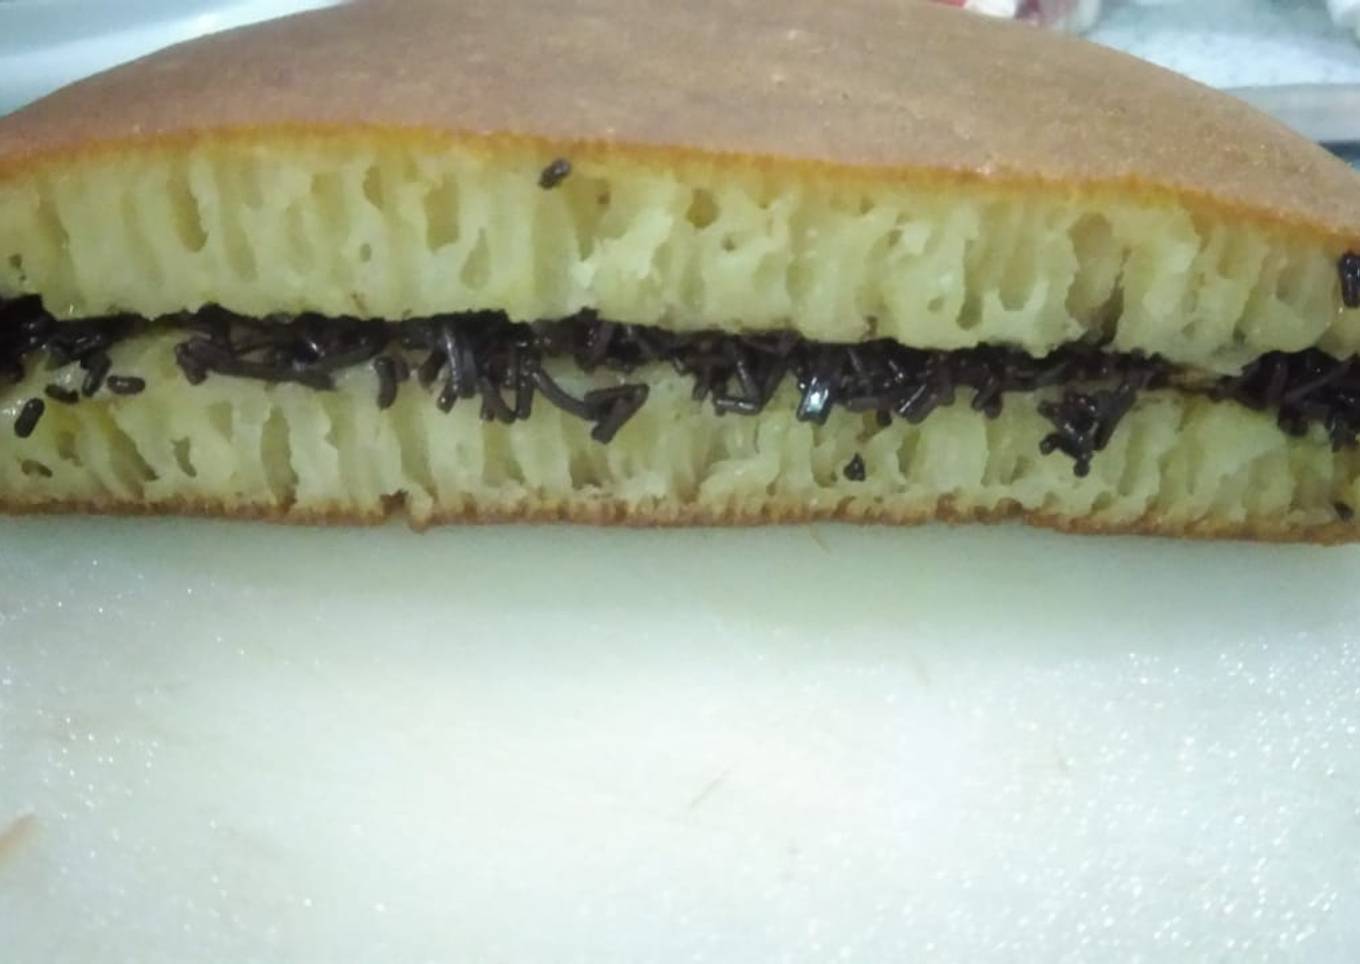 Martabak manis pakai panci teflon with soda kue tanpa telur - resep kuliner nusantara